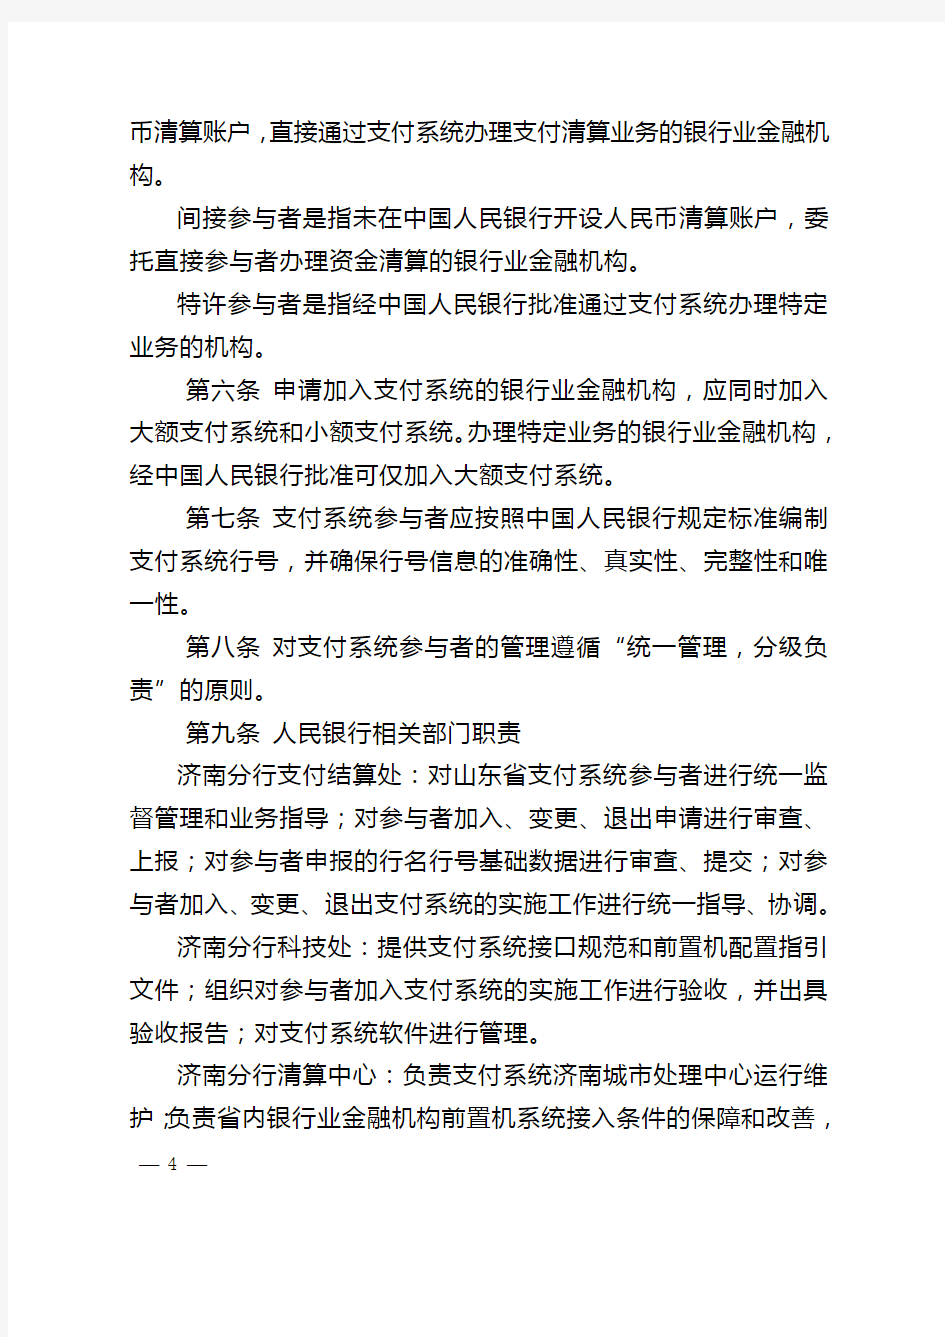 济银发161号-中国人民银行济南分行支付系统参与者管理办法(正文)